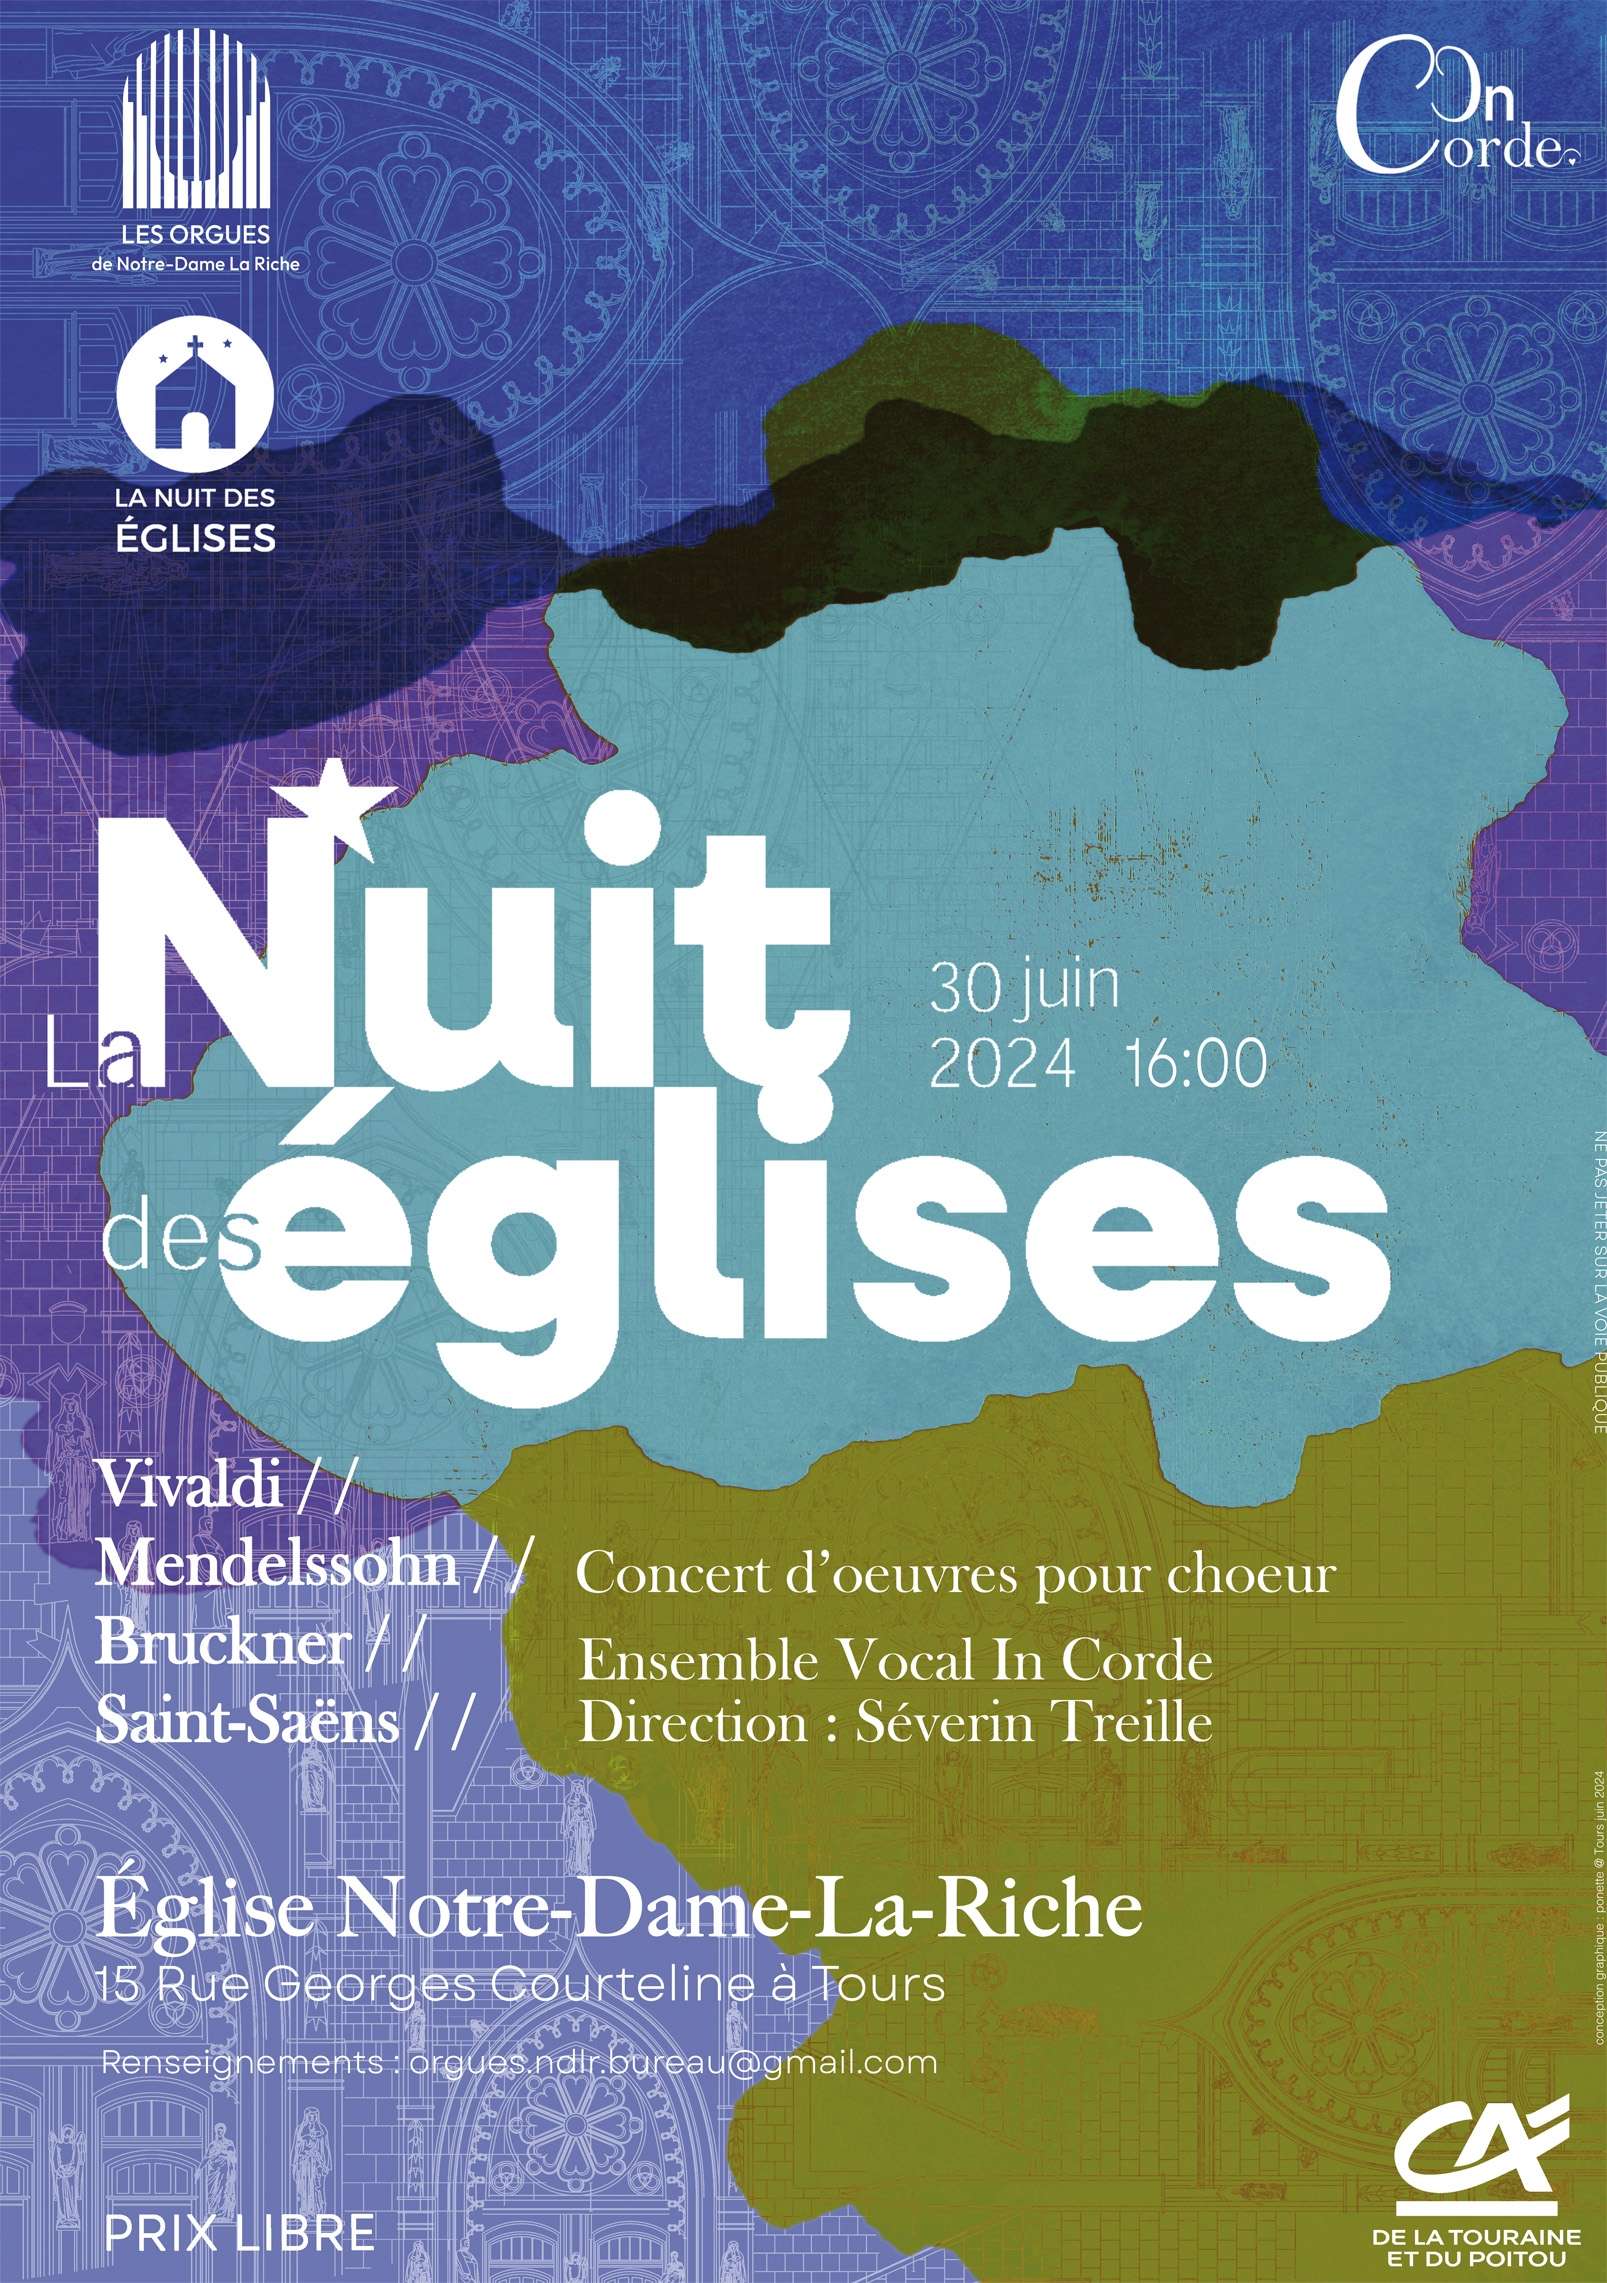 Affiche concert Ensemble Vocal In Corde La Nuit des eglises